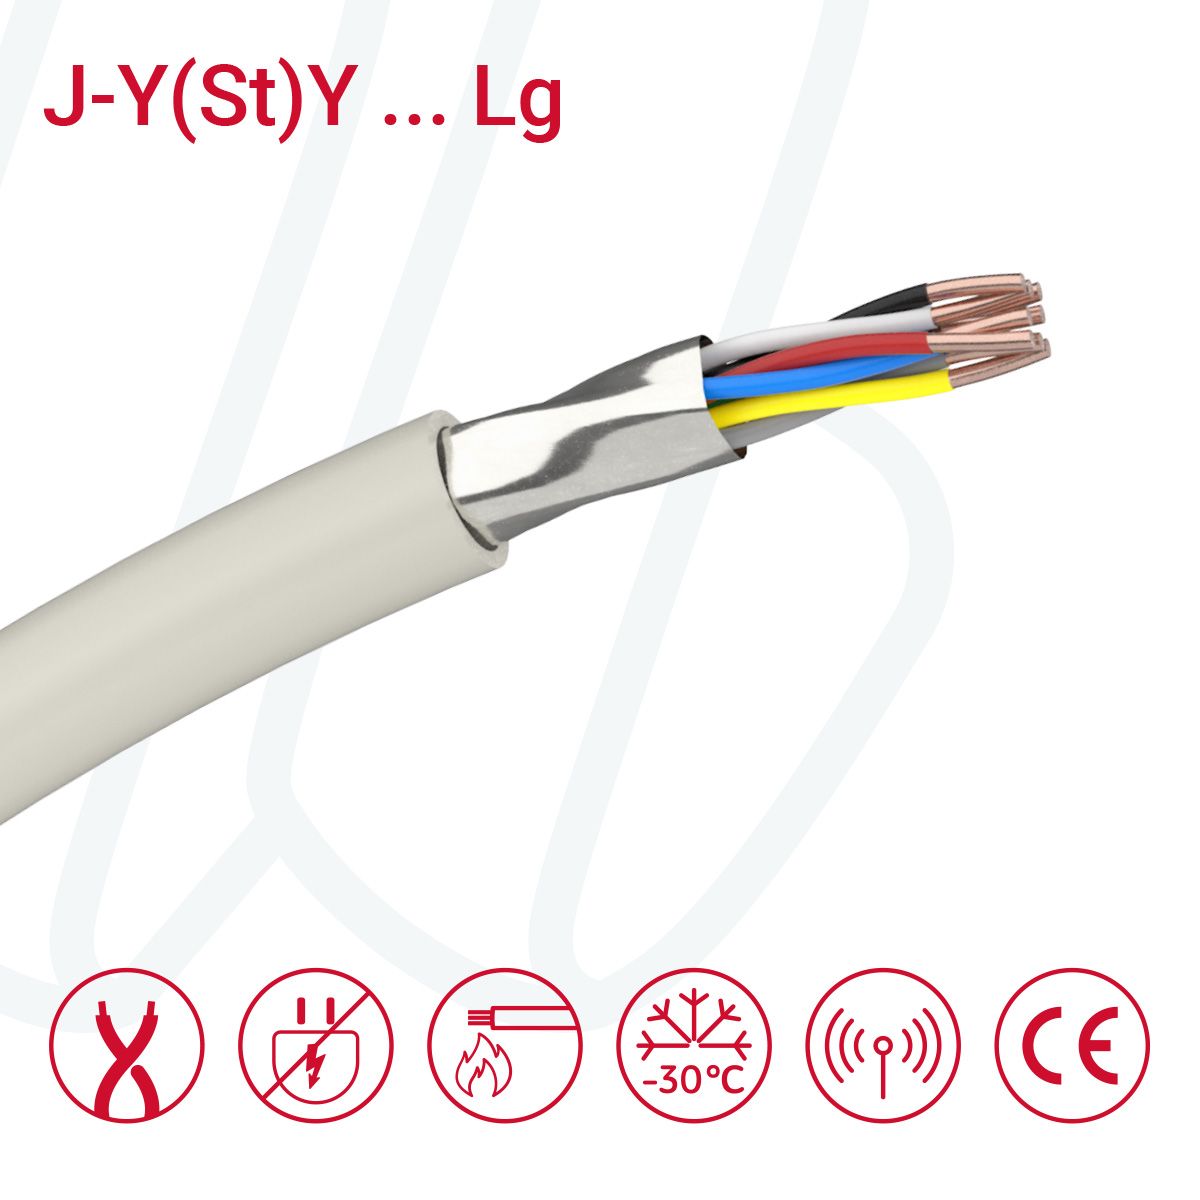 Кабель J-Y(St)Y…LG 10X2X0.6 (0.28мм²) сірий, 20, 0.28